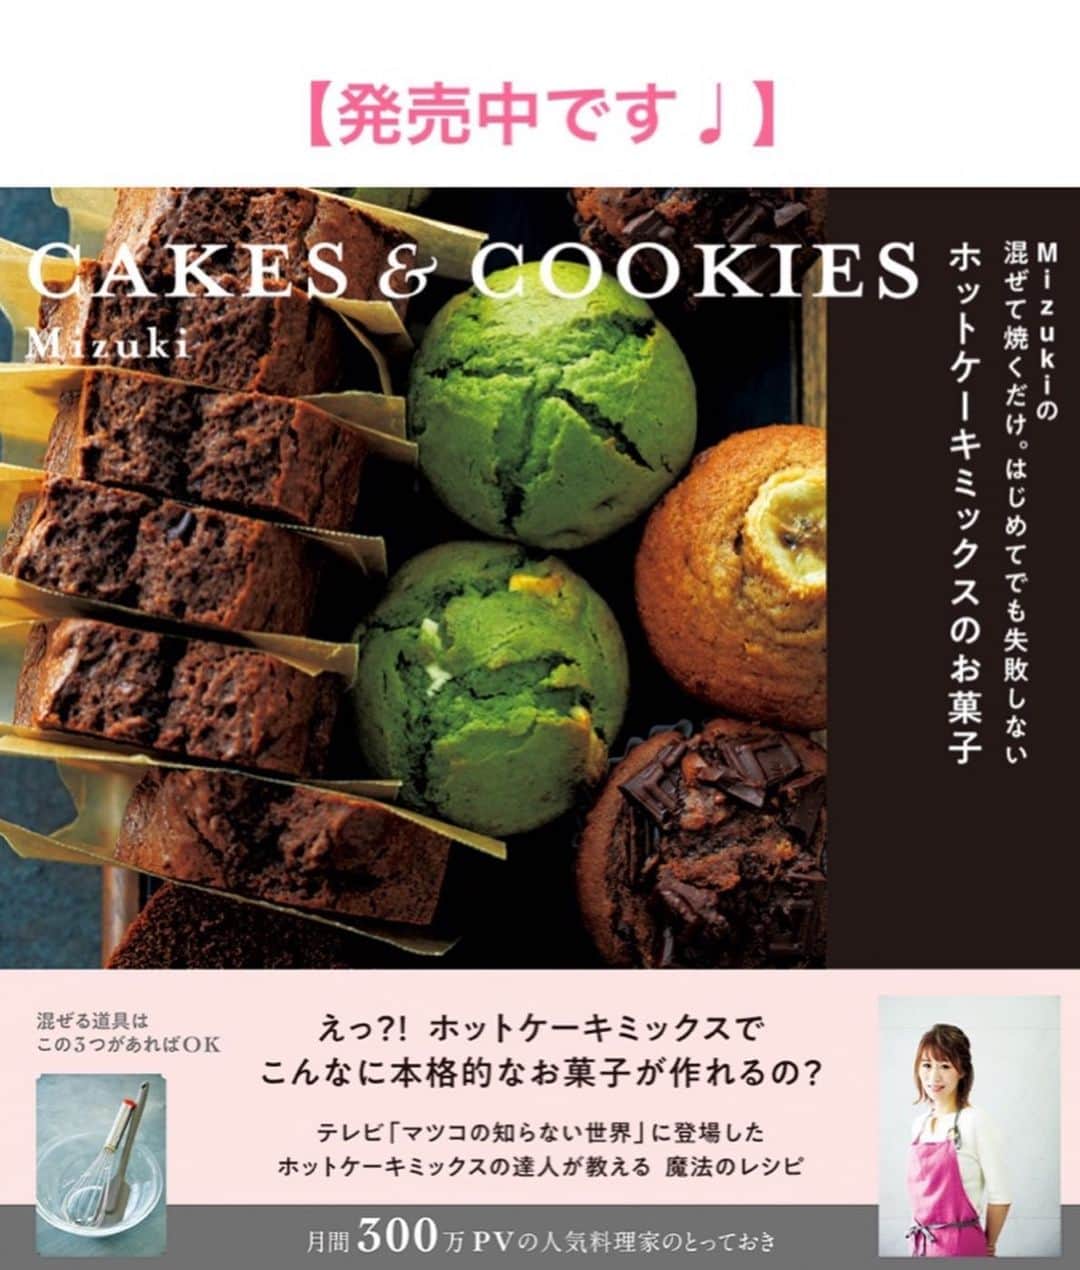 Mizuki【料理ブロガー・簡単レシピ】さんのインスタグラム写真 - (Mizuki【料理ブロガー・簡単レシピ】Instagram)「・﻿ 【#レシピ 】ーーーーーーーー﻿ ♡しっとり濃厚ブラウニー♡﻿ ーーーーーーーーーーーーーー﻿ ﻿ ﻿ ﻿ おはようございます(*^^*)﻿ ﻿ 今日はバレンタインにもおすすめの﻿ \ 濃厚ブラウニー / のご紹介です♩﻿ ﻿ チョコをたっぷり加えた生地は﻿ しっとり濃厚♡♡﻿ クルミが食感と味わいの﻿ アクセントになりますよ〜♩﻿ ﻿ 生地は混ぜるだけ！の﻿ 超簡単レシピです(*´艸`)﻿ 日持ちして持ち運びしやすいので﻿ よかったらお試し下さいね(*^^*)﻿ ﻿ ＊)バターは有塩でも無塩でもOK！﻿ ＊)チョコはブラックでもミルクでもOK！﻿ ﻿ ﻿ ﻿ ＿＿＿＿＿＿＿＿＿＿＿＿＿＿＿＿＿＿＿＿﻿ 【15cmスクエア型】﻿ 板チョコ...3枚(150g)﻿ バター...50g﻿ 卵...2個﻿ 牛乳...大1﻿ ●薄力粉...50g﻿ ●ココアパウダー...10g﻿ クルミ...50g﻿ ﻿ (準備)型にシートを敷く。オーブンを180度に予熱する。チョコとバターは細かく切る。●は合わせてふるう。﻿ 1.耐熱ボウルにチョコとバターを入れ、600Wのレンジで1分30秒加熱して混ぜて溶かす。﻿ 2.卵、牛乳の順に加えて手早く混ぜ、最後に●を加えてさっくり混ぜる。﻿ 3.型に注いでクルミをのせ、予熱したオーブンで20分焼く。焼けたら型から取り出し、網にのせて冷ます。﻿ ￣￣￣￣￣￣￣￣￣￣￣￣￣￣￣￣￣￣￣￣﻿ ﻿ ﻿ ﻿ 《ポイント》﻿ ♦︎バターは有塩でも無塩でもどちらでもOK！﻿ ♦︎私はブラックチョコレートを使用しています♩ミルクチョコでも作れます♩﻿ ♦︎チョコが溶け残る場合はレンジの加熱時間を追加して下さい♩﻿ ♦︎一晩以上寝かせるとしっとり美味しくなります♩﻿ ♦︎常温で4日程日持ちします♩﻿ ﻿ ﻿ ﻿ ﻿ ﻿ ﻿ ﻿ ﻿ ﻿ ﻿ 📕新刊発売中📕﻿ 【ラクしておいしい！#1品晩ごはん 】﻿ ￣￣￣￣￣￣￣￣￣￣￣￣￣￣￣￣￣﻿ 私たちだってヘトヘトな日がある•••﻿ 毎日何品も作っていられない•••﻿ もうごはんに悩みたくない😢﻿ そんな時、1品ごはんはいかがでしょう？﻿ というご提案です✨﻿ ﻿ 【1品ごはん】は﻿ 副菜いらずで全てがシンプル！﻿ ￣￣￣￣￣￣￣￣￣￣￣￣￣￣￣￣￣￣﻿ 一品つくるだけでいいから﻿ 献立を考えなくてよし！﻿ ￣￣￣￣￣￣￣￣￣￣￣￣￣￣￣￣￣￣﻿ 悩まない、疲れない、﻿ 気力や時間がなくてもなんとかなる！﻿ ￣￣￣￣￣￣￣￣￣￣￣￣￣￣￣￣￣￣﻿ そんな頼りになる﻿ 便利なお助けごはんです☺️💕﻿ (ハイライトに🔗貼っています✨)﻿ ￣￣￣￣￣￣￣￣￣￣￣￣￣￣￣￣￣﻿ ﻿ ﻿ ﻿ ﻿ ﻿ ⭐️発売中⭐️﻿ ＿＿＿＿＿＿＿＿＿＿＿＿＿＿＿＿＿＿﻿ しんどくない献立、考えました♩﻿ \15分でいただきます/﻿ 📕#Mizukiの2品献立 📕﻿ ﻿ 和食をもっとカジュアルに♩﻿ \毎日のごはんがラクになる/﻿ 📘#Mizukiの今どき和食 📘﻿ ﻿ ホケミレシピの決定版♩﻿ \はじめてでも失敗しない/﻿ 📙ホットケーキミックスのお菓子 📙﻿ ﻿ NHKまる得マガジンテキスト☆﻿ ホットケーキミックスで﻿ 📗絶品おやつ&意外なランチ📗﻿ ￣￣￣￣￣￣￣￣￣￣￣￣￣￣￣￣￣￣﻿ ﻿ ﻿ ﻿ ＿＿＿＿＿＿＿＿＿＿＿＿＿＿＿＿＿＿﻿ レシピを作って下さった際や﻿ レシピ本についてのご投稿には﻿ タグ付け( @mizuki_31cafe )して﻿ お知らせいただけると嬉しいです😊💕﻿ ￣￣￣￣￣￣￣￣￣￣￣￣￣￣￣￣￣￣﻿ ﻿ ﻿ ﻿ ﻿ #ブラウニー#バレンタイン#バレンタインレシピ#チョコレート#Mizuki#簡単レシピ#時短レシピ#節約レシピ#料理#フーディーテーブル#マカロニメイト#おうちごはん#デリスタグラマー#料理好きな人と繋がりたい#おうちごはんlover#写真好きな人と繋がりたい#foodpic#cooking#recipe#lin_stagrammer#foodporn#yummy#f52grams#濃厚ブラウニーm」1月18日 7時09分 - mizuki_31cafe